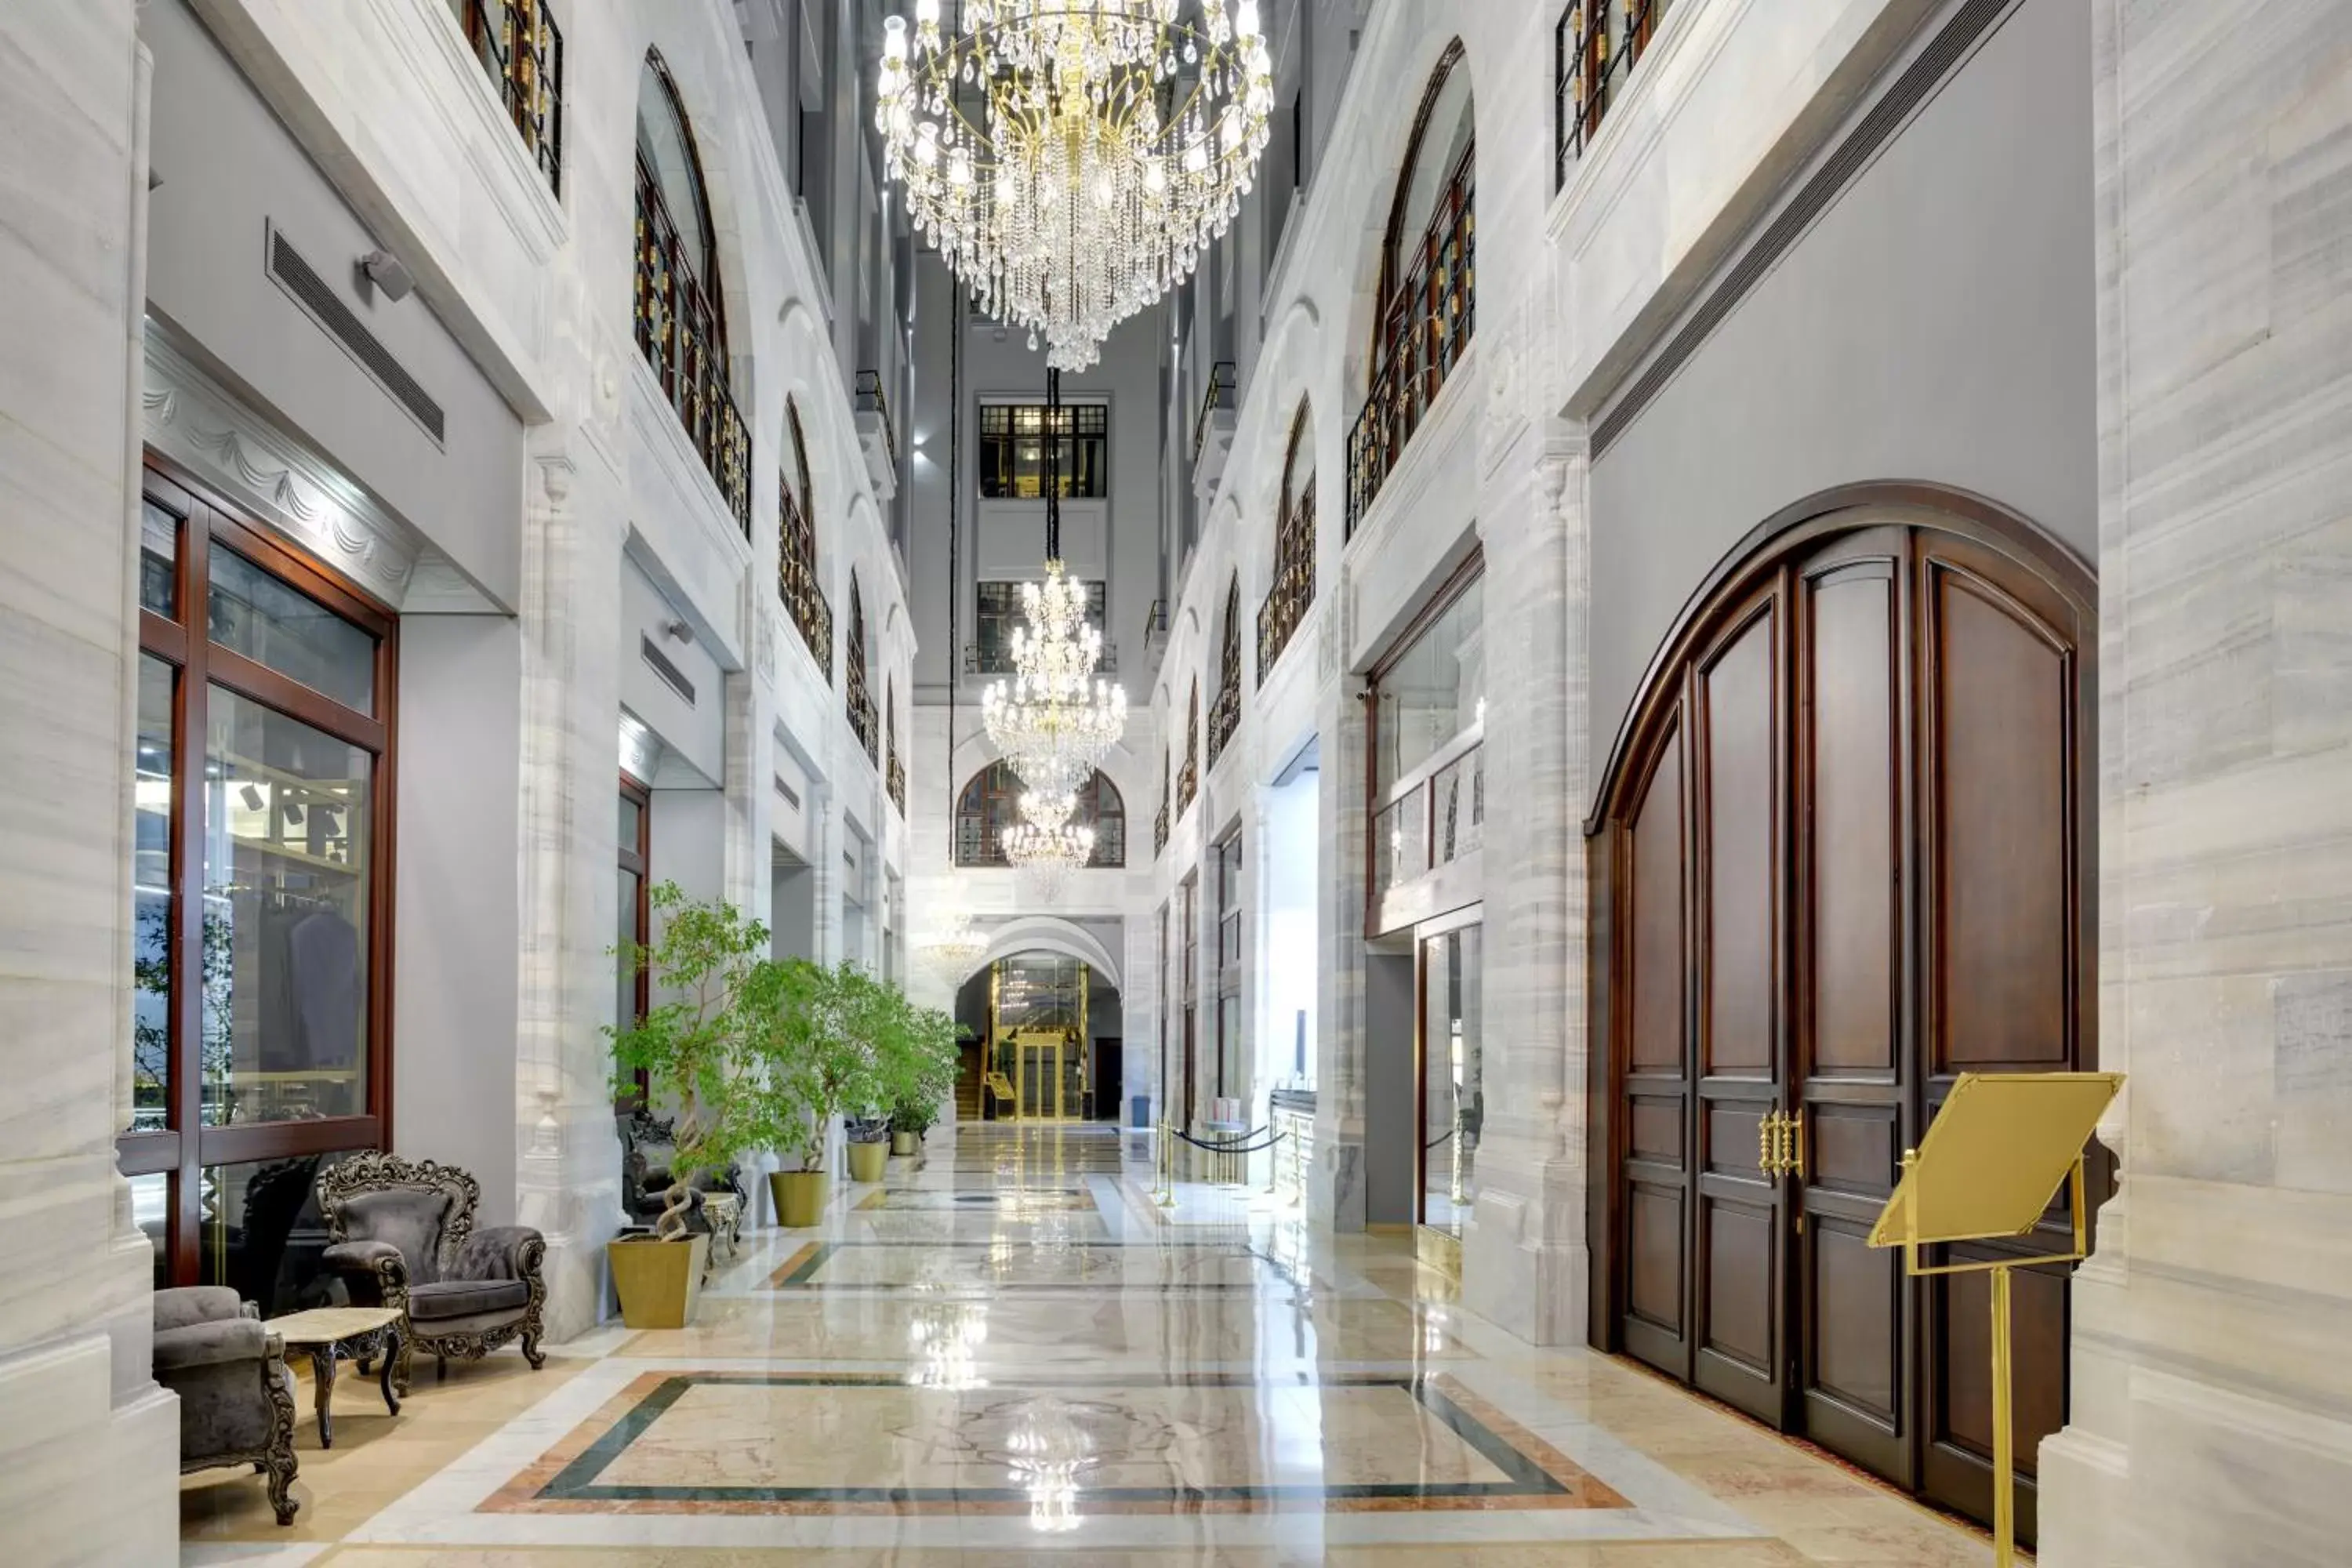 Lobby or reception in Legacy Ottoman Hotel